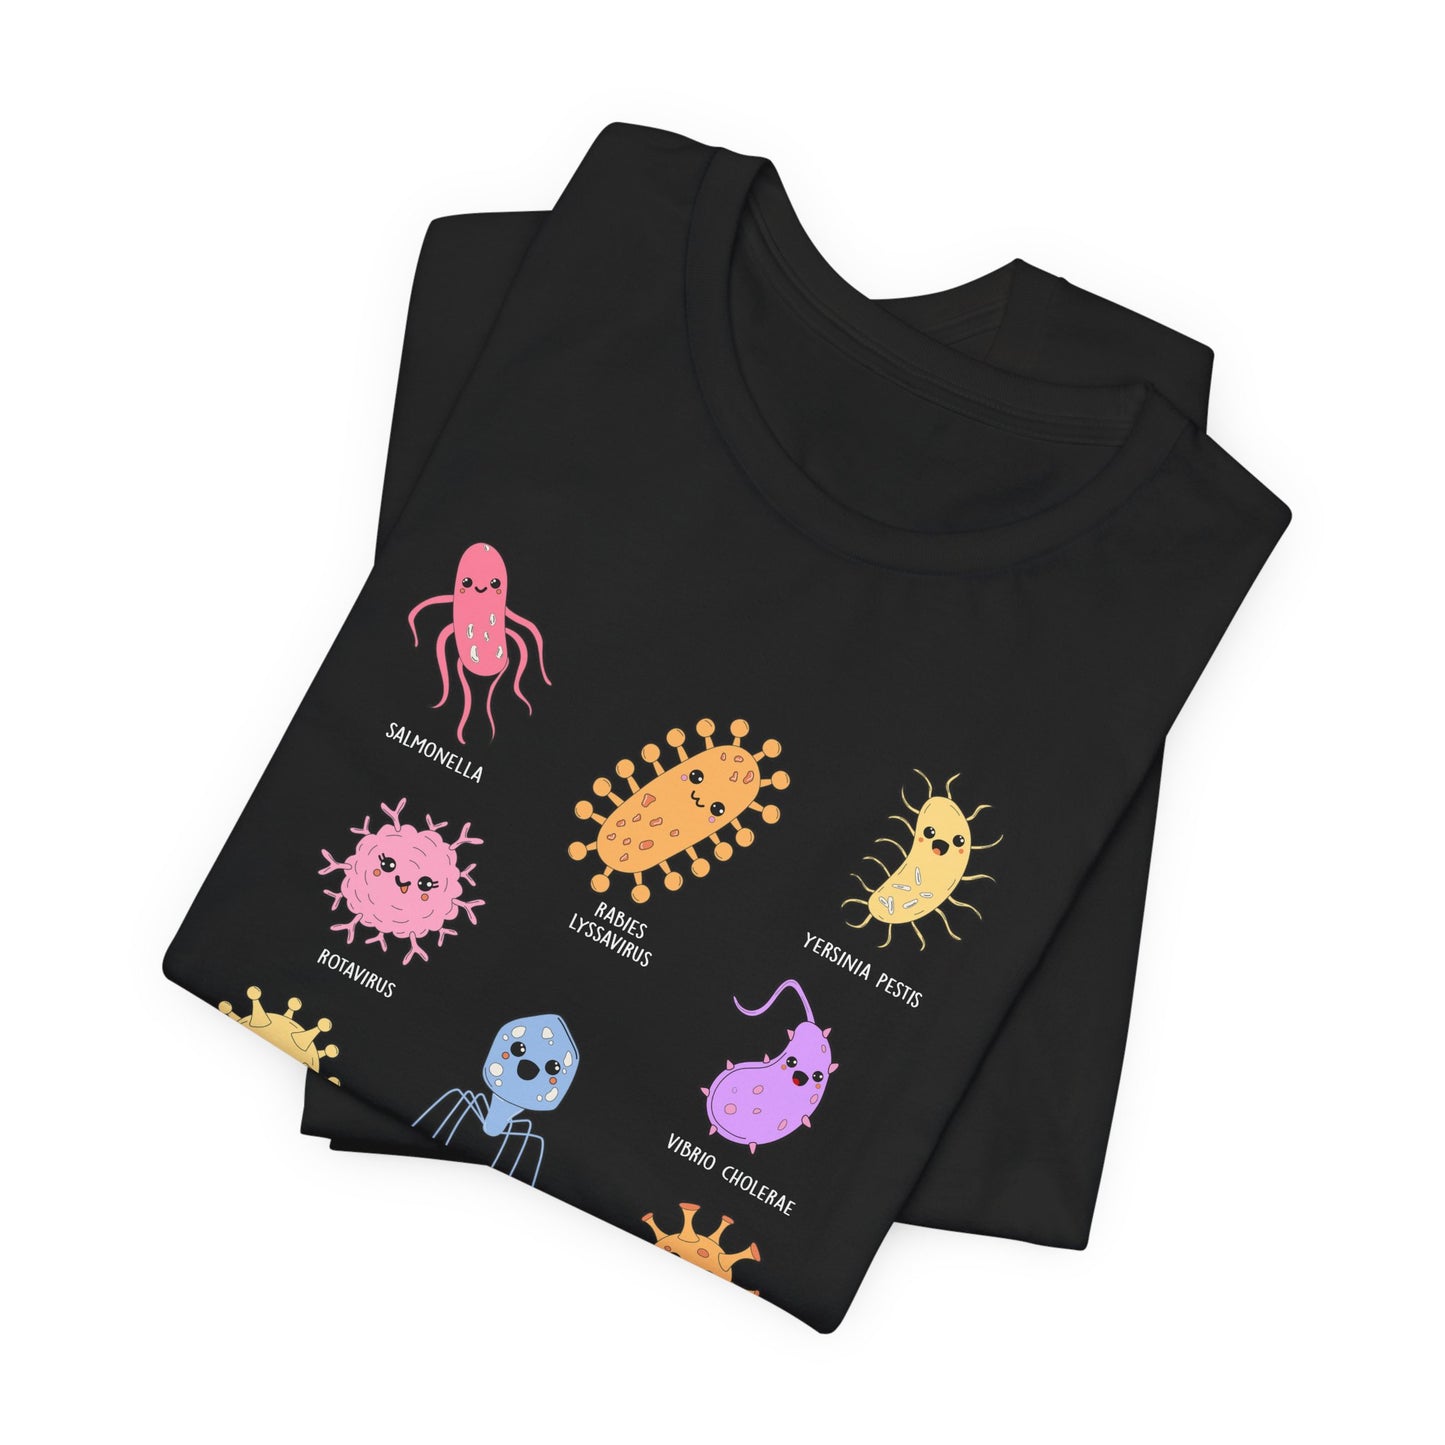 Cute Microbes T-Shirt